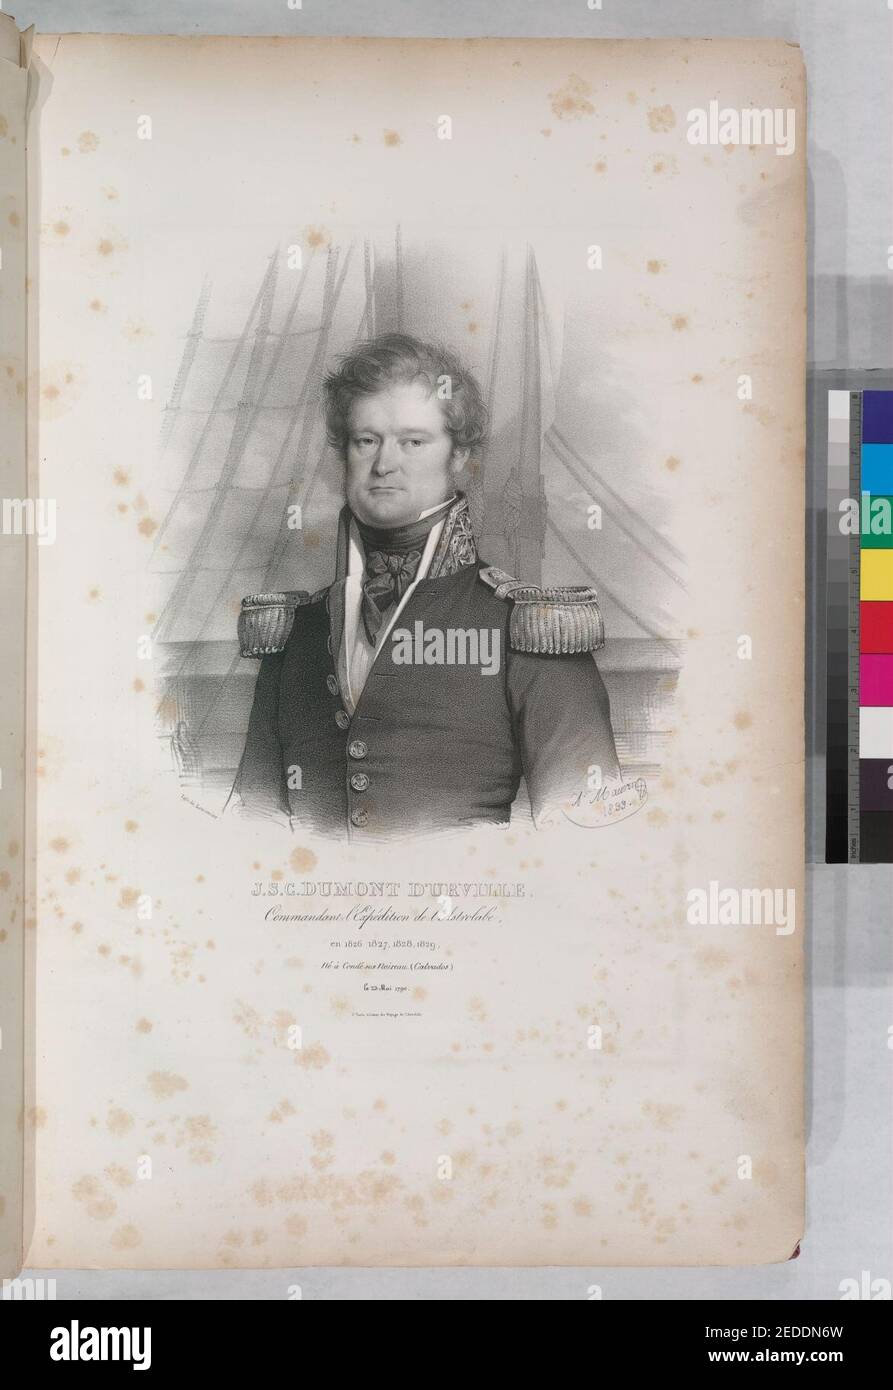 J.S.C. Dumont D'Urville.- Comandant l'expédition de l'Astrolabe, it 1826, 1827, 1828, 1829, né á condé sui noireau. (Calvados.), PE 23 maggio 1790 Foto Stock